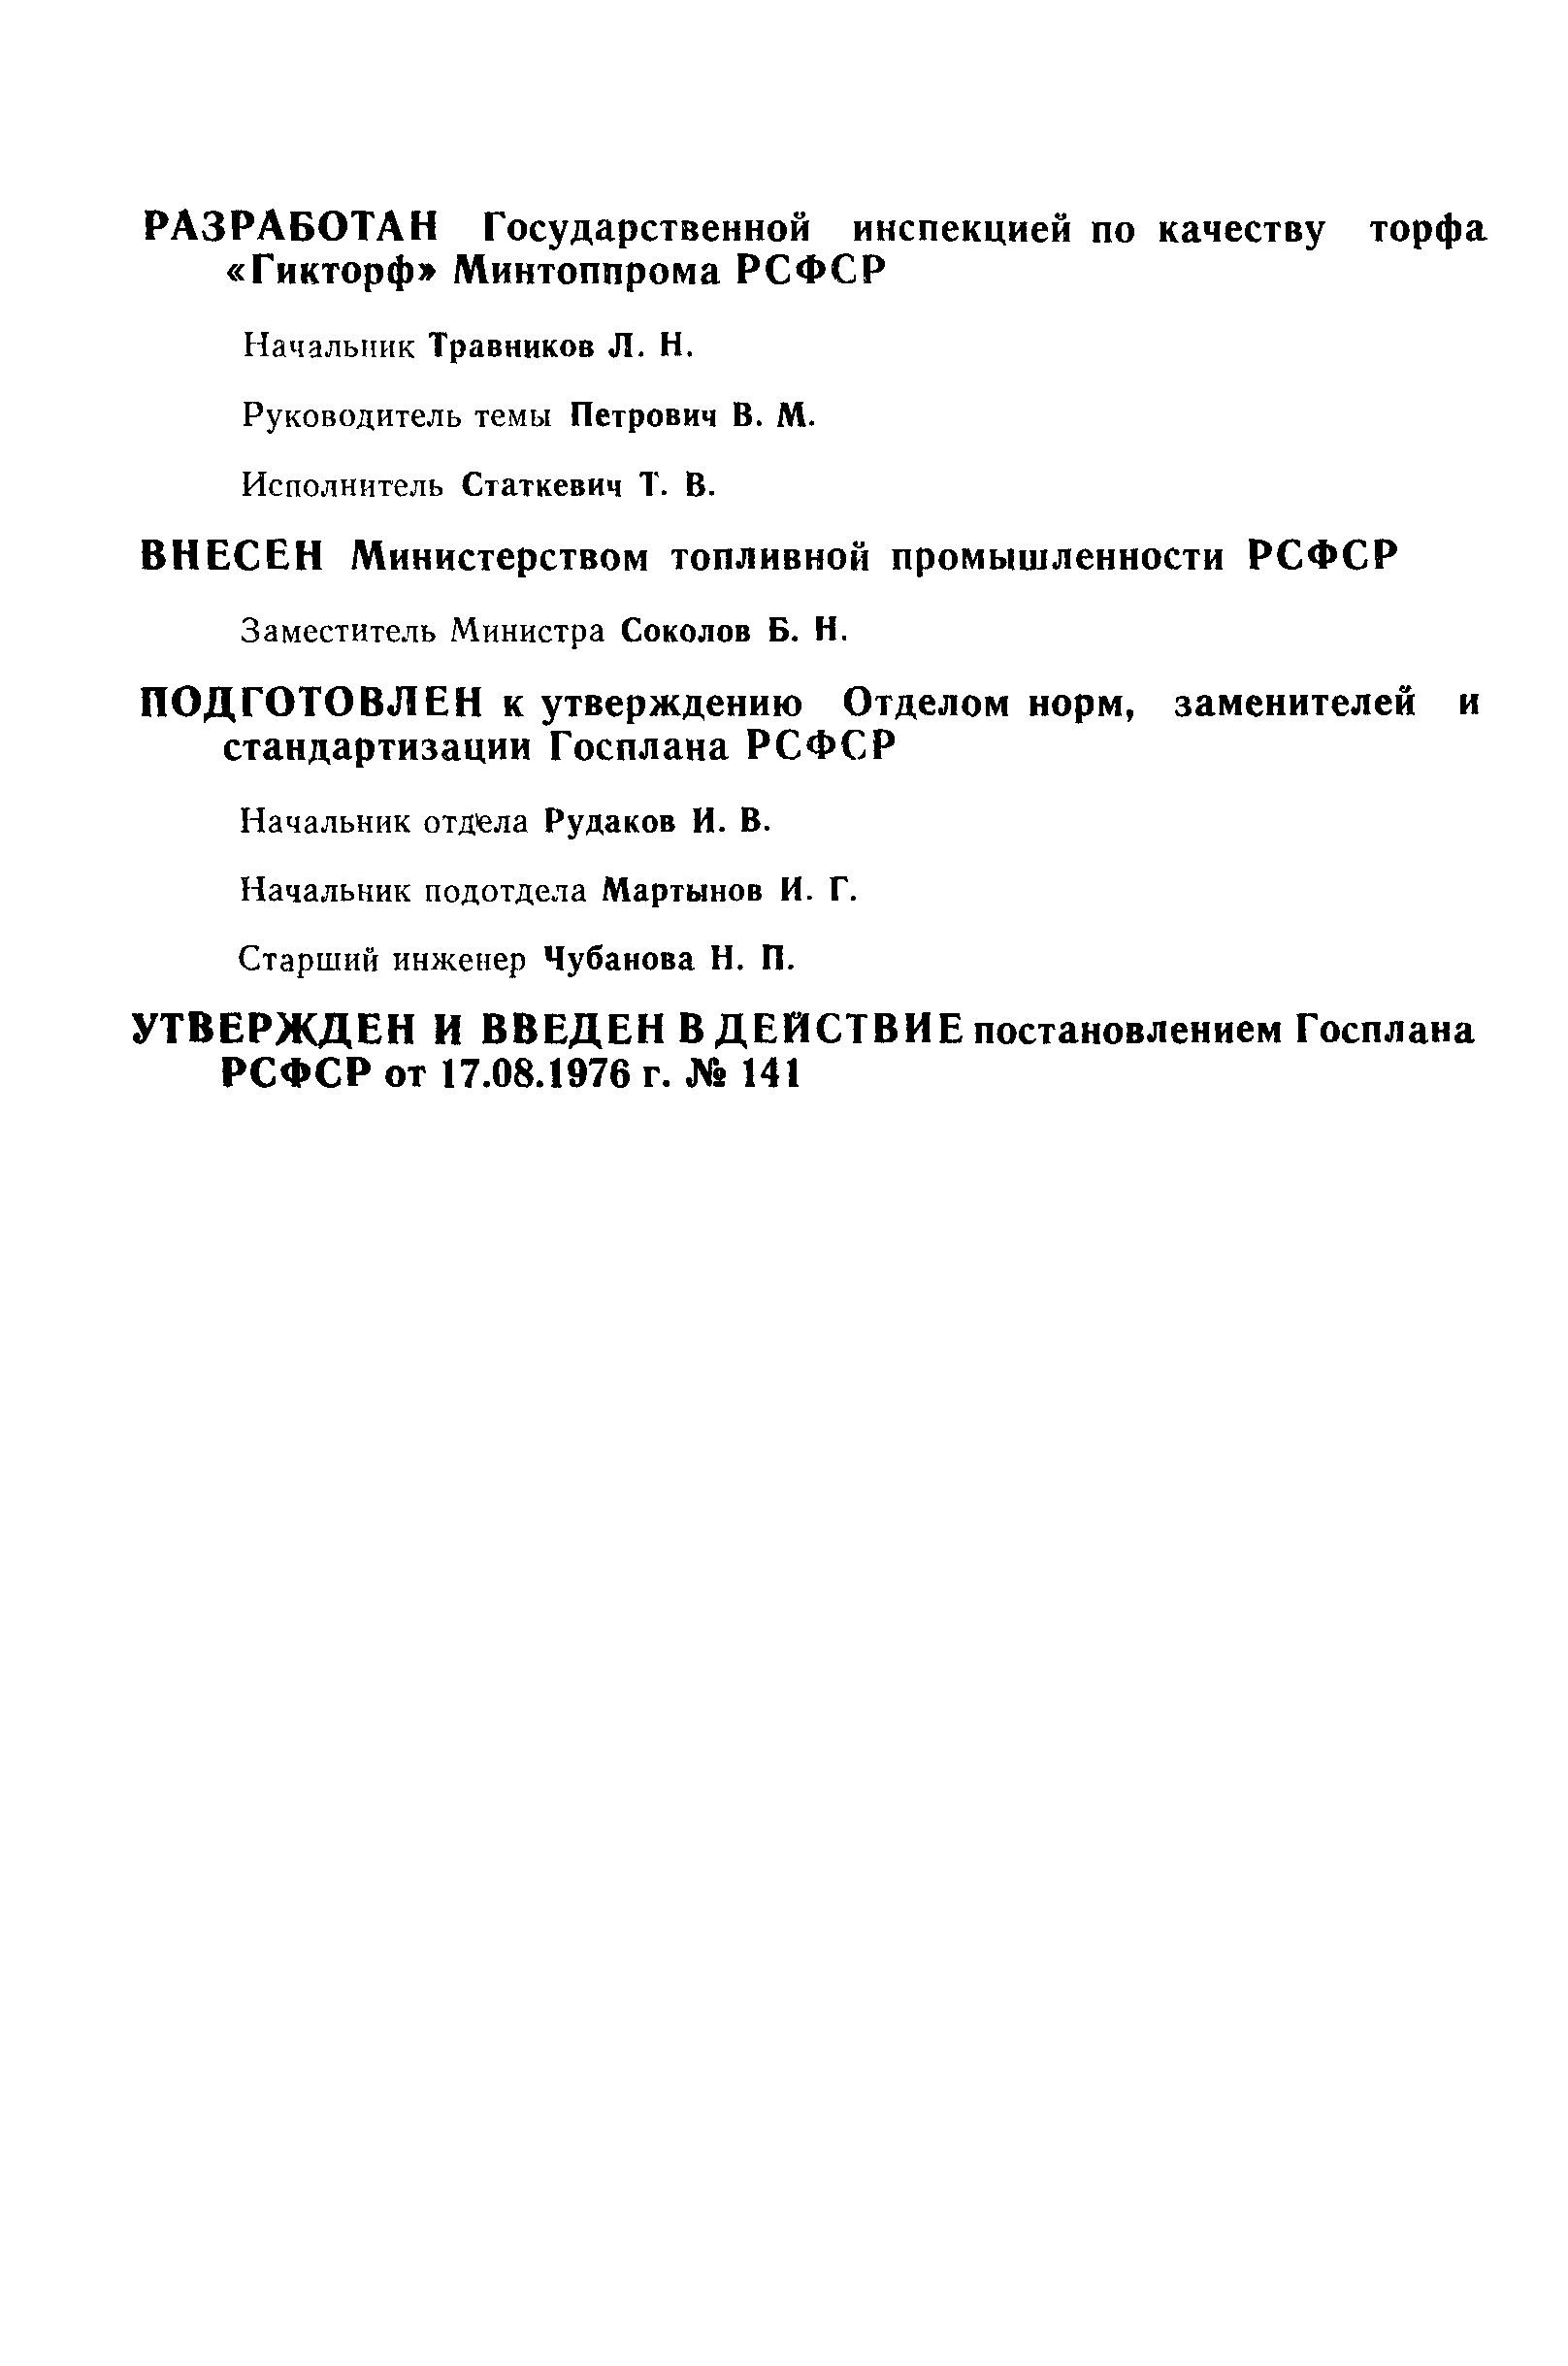 РСТ РСФСР 53-76